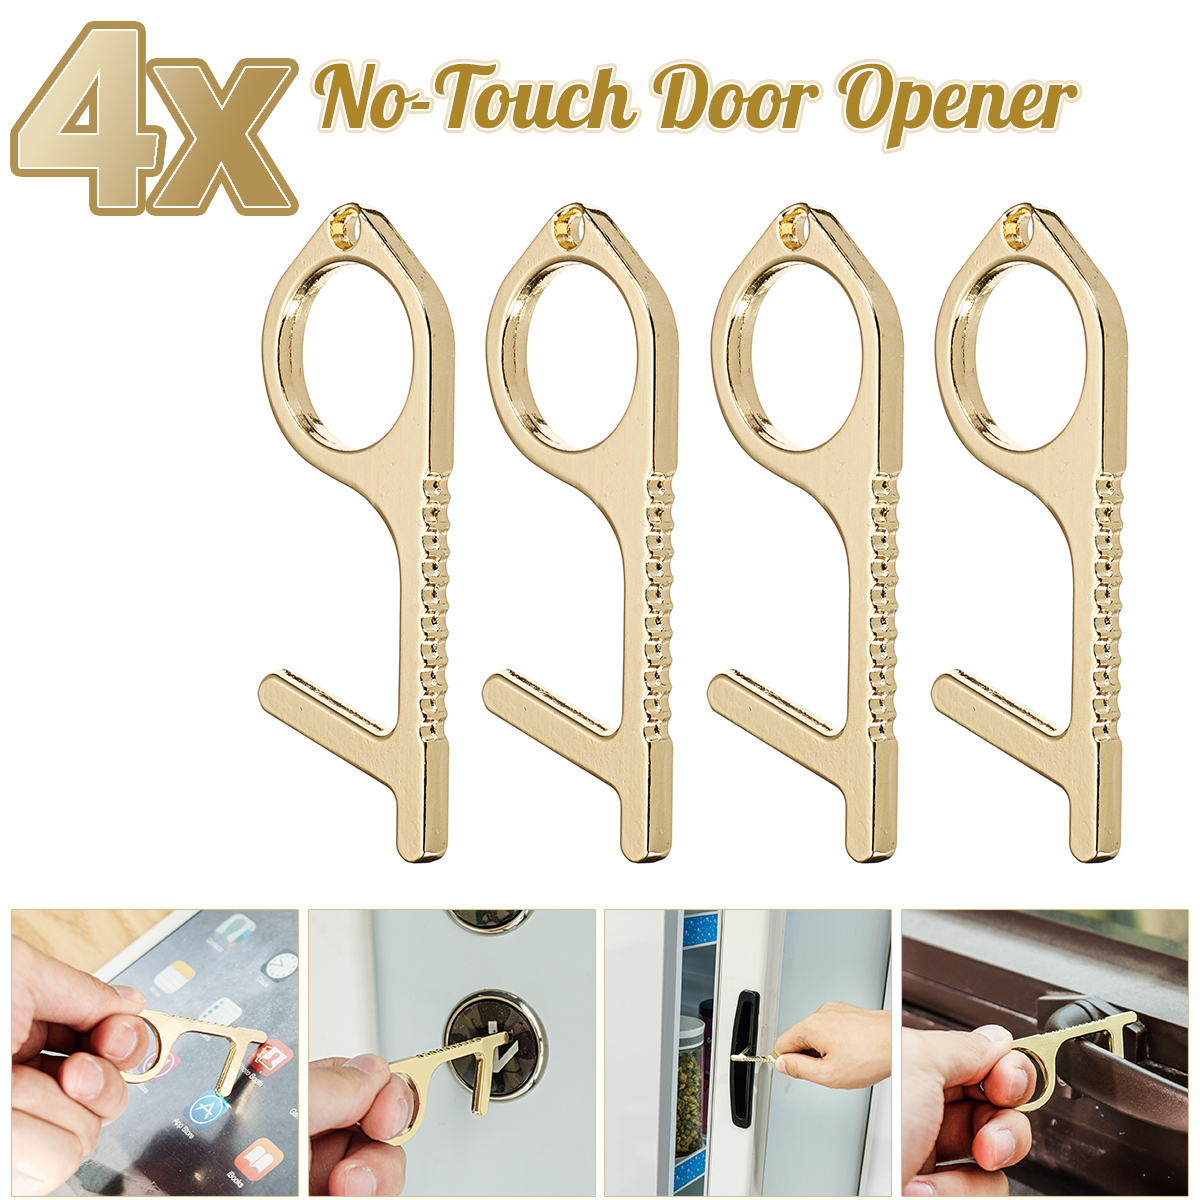 Pathonor-EDC-Door-Opener-No-Touch-Door-Opener-Tool-Stylus-For-Touchscreens-and-Bottle-Opener-1960925-1